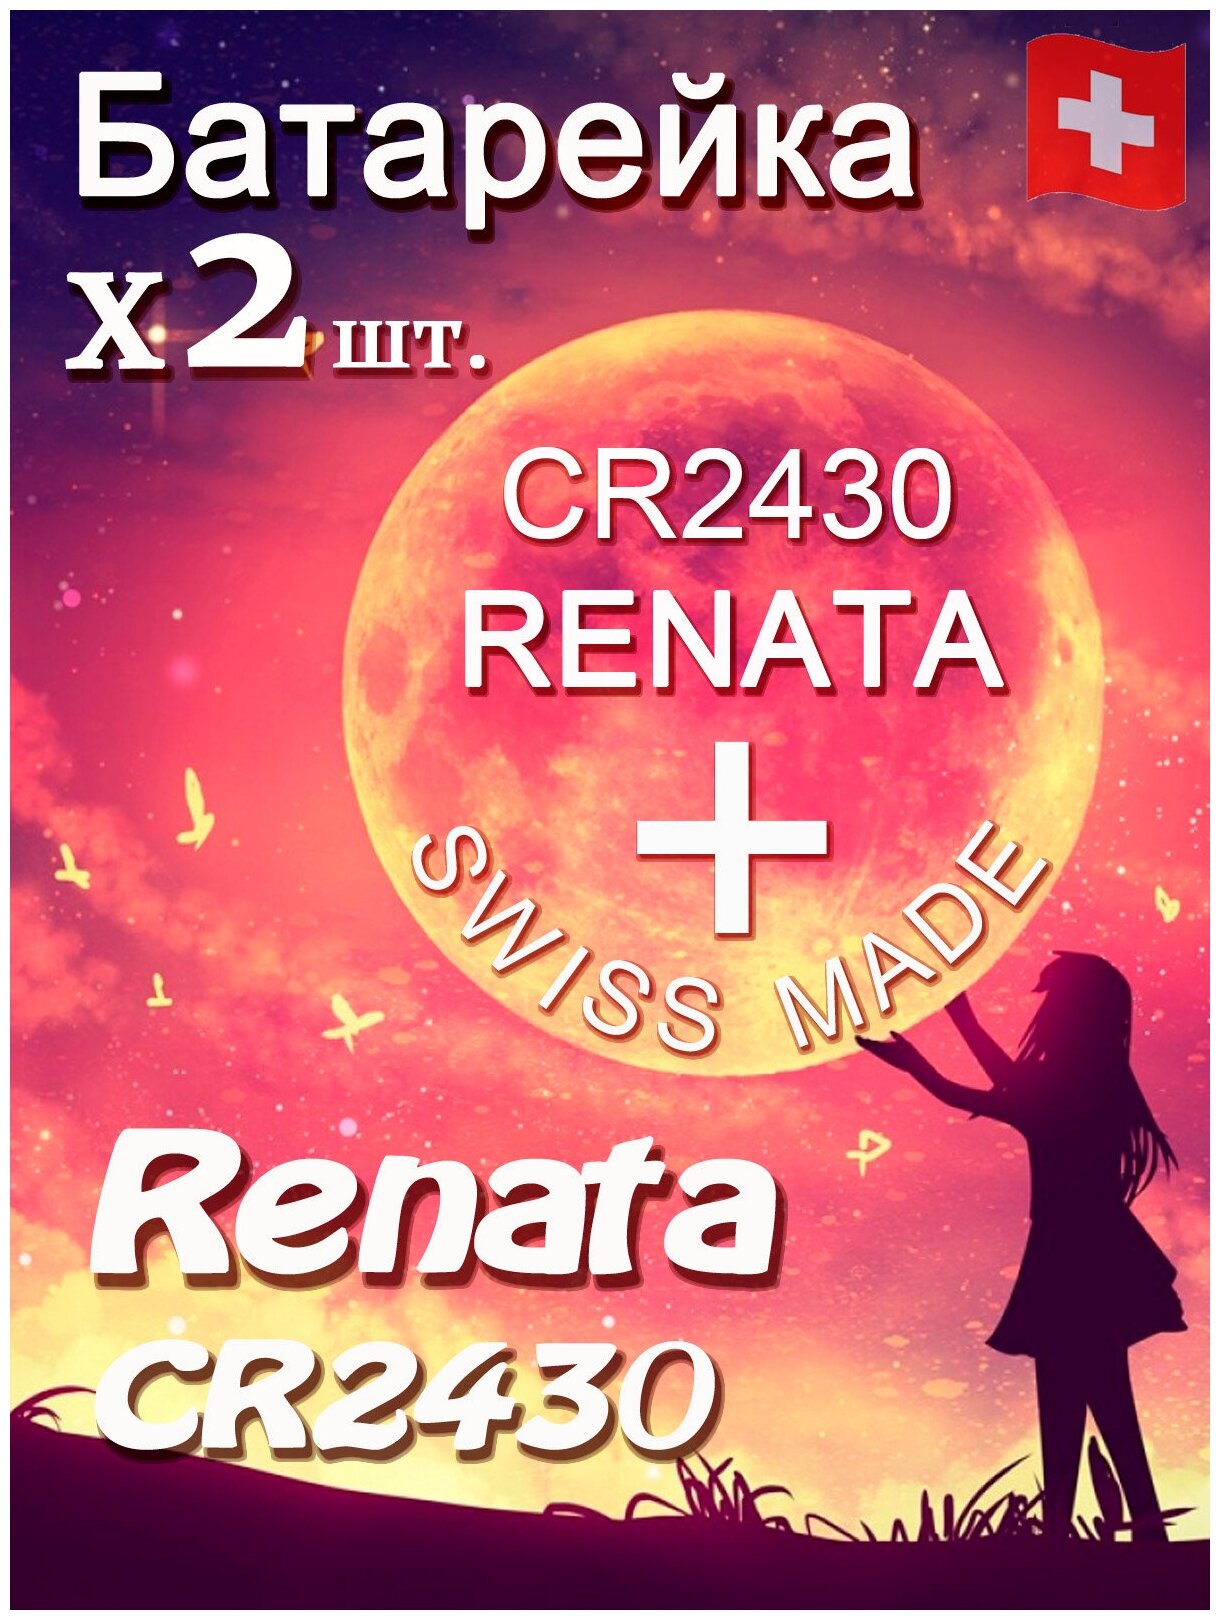 Батарейка Renata CR2430 B1 2шт/Элемент питания рената CR2430 B1 2шт